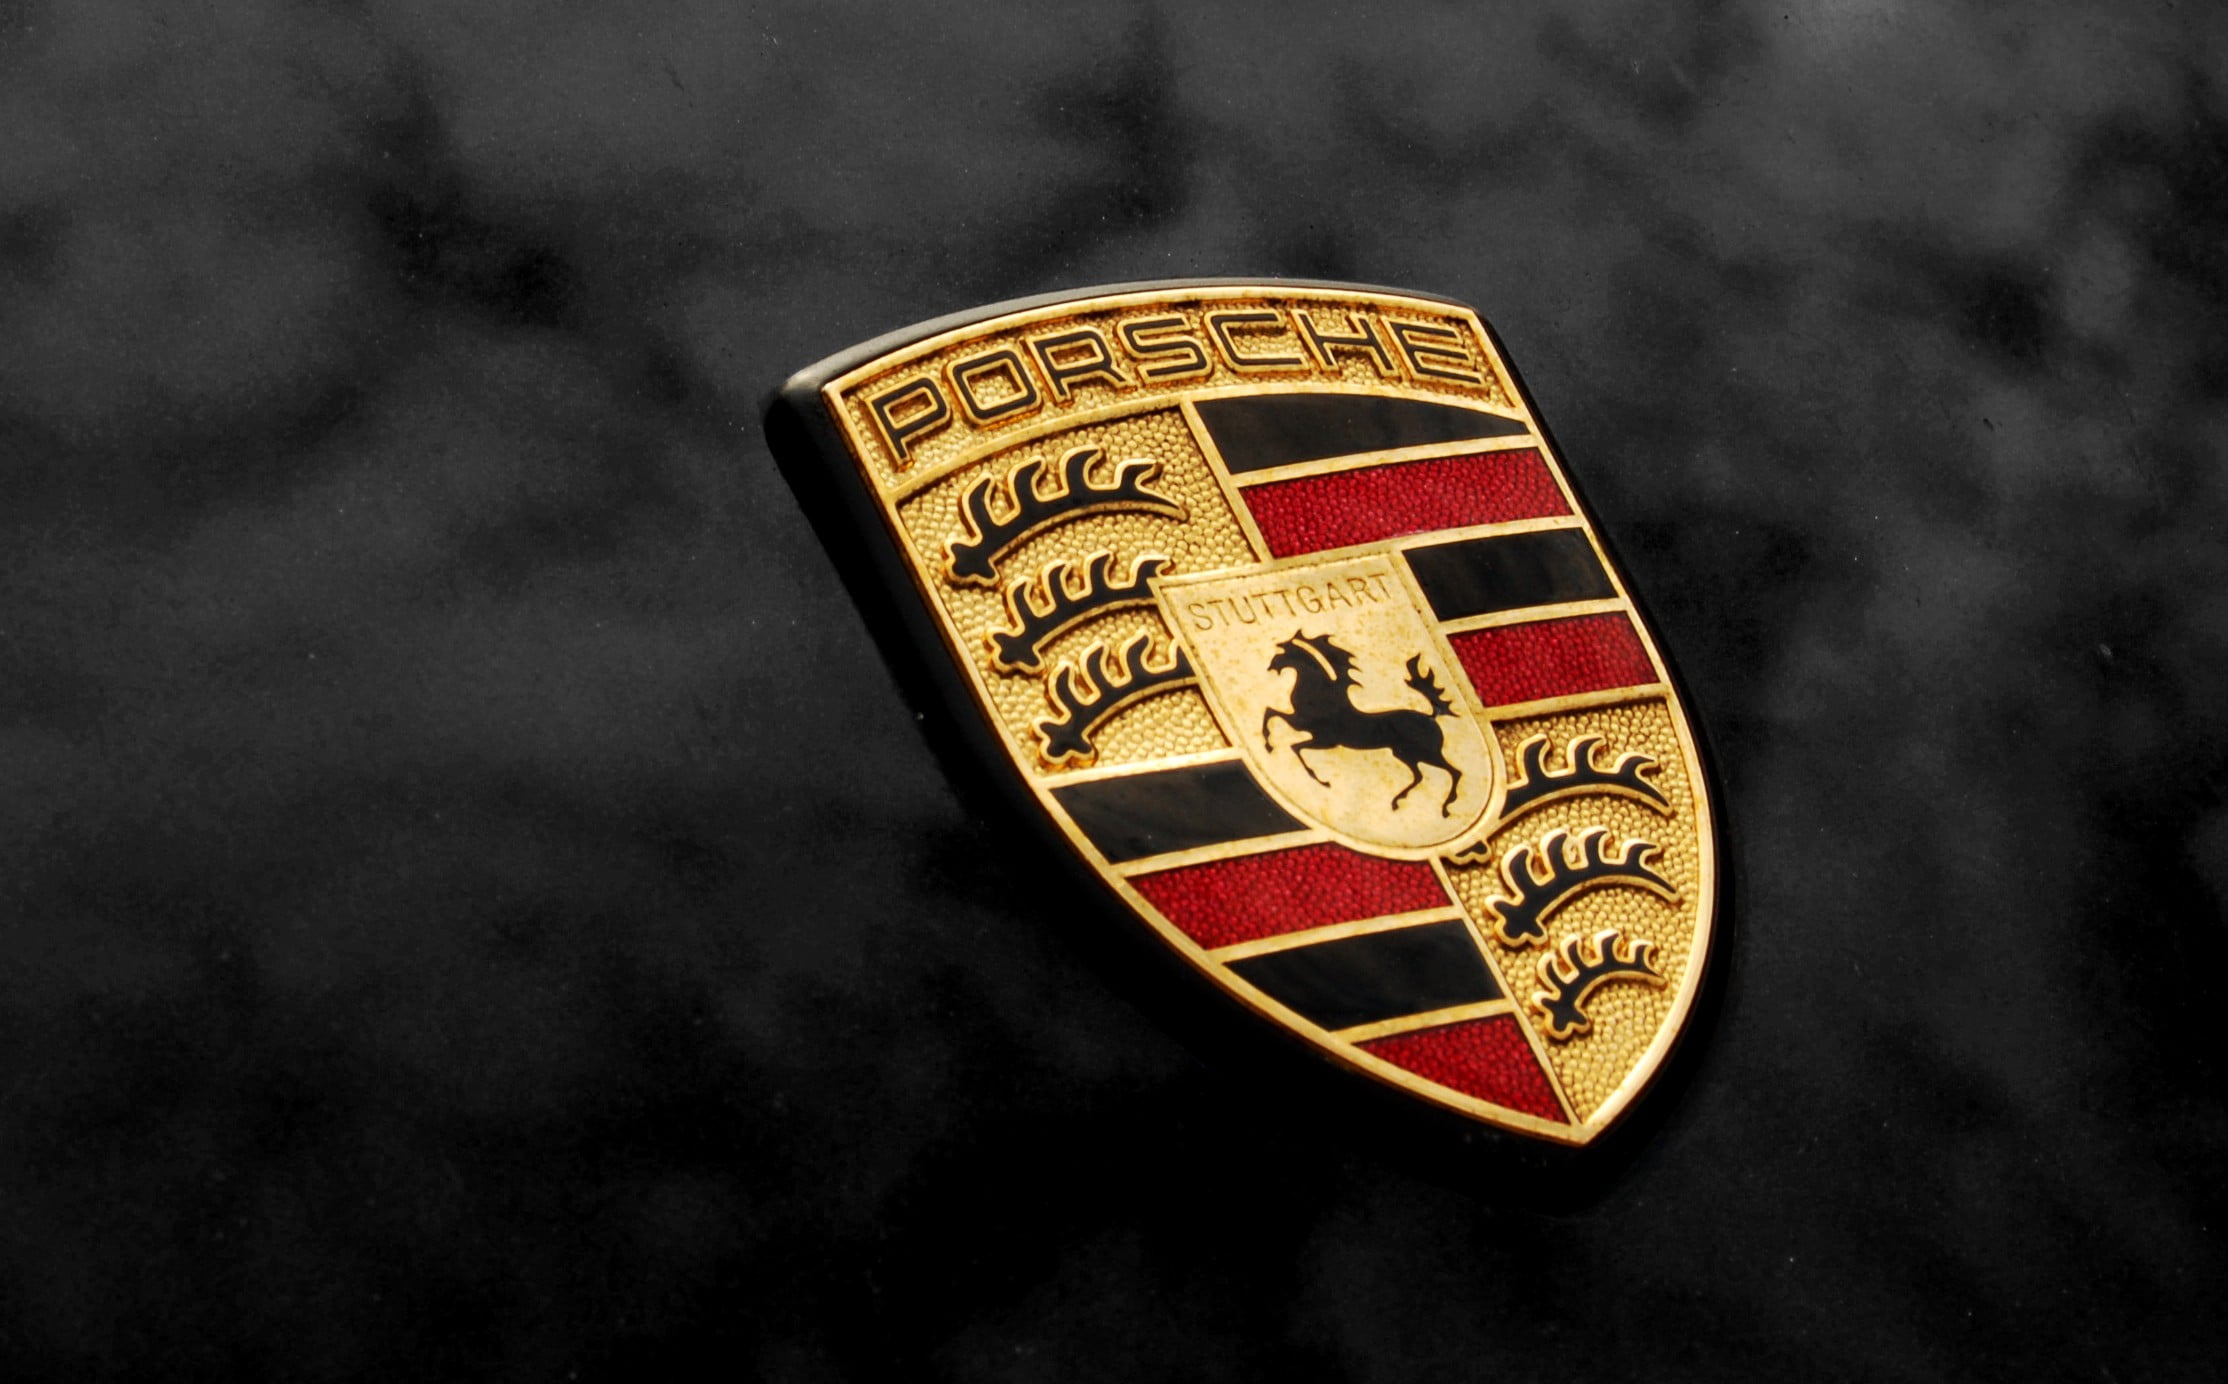 The Brand Porsche Porsche Logo Car Emblem Super Cars - Bank2home.com